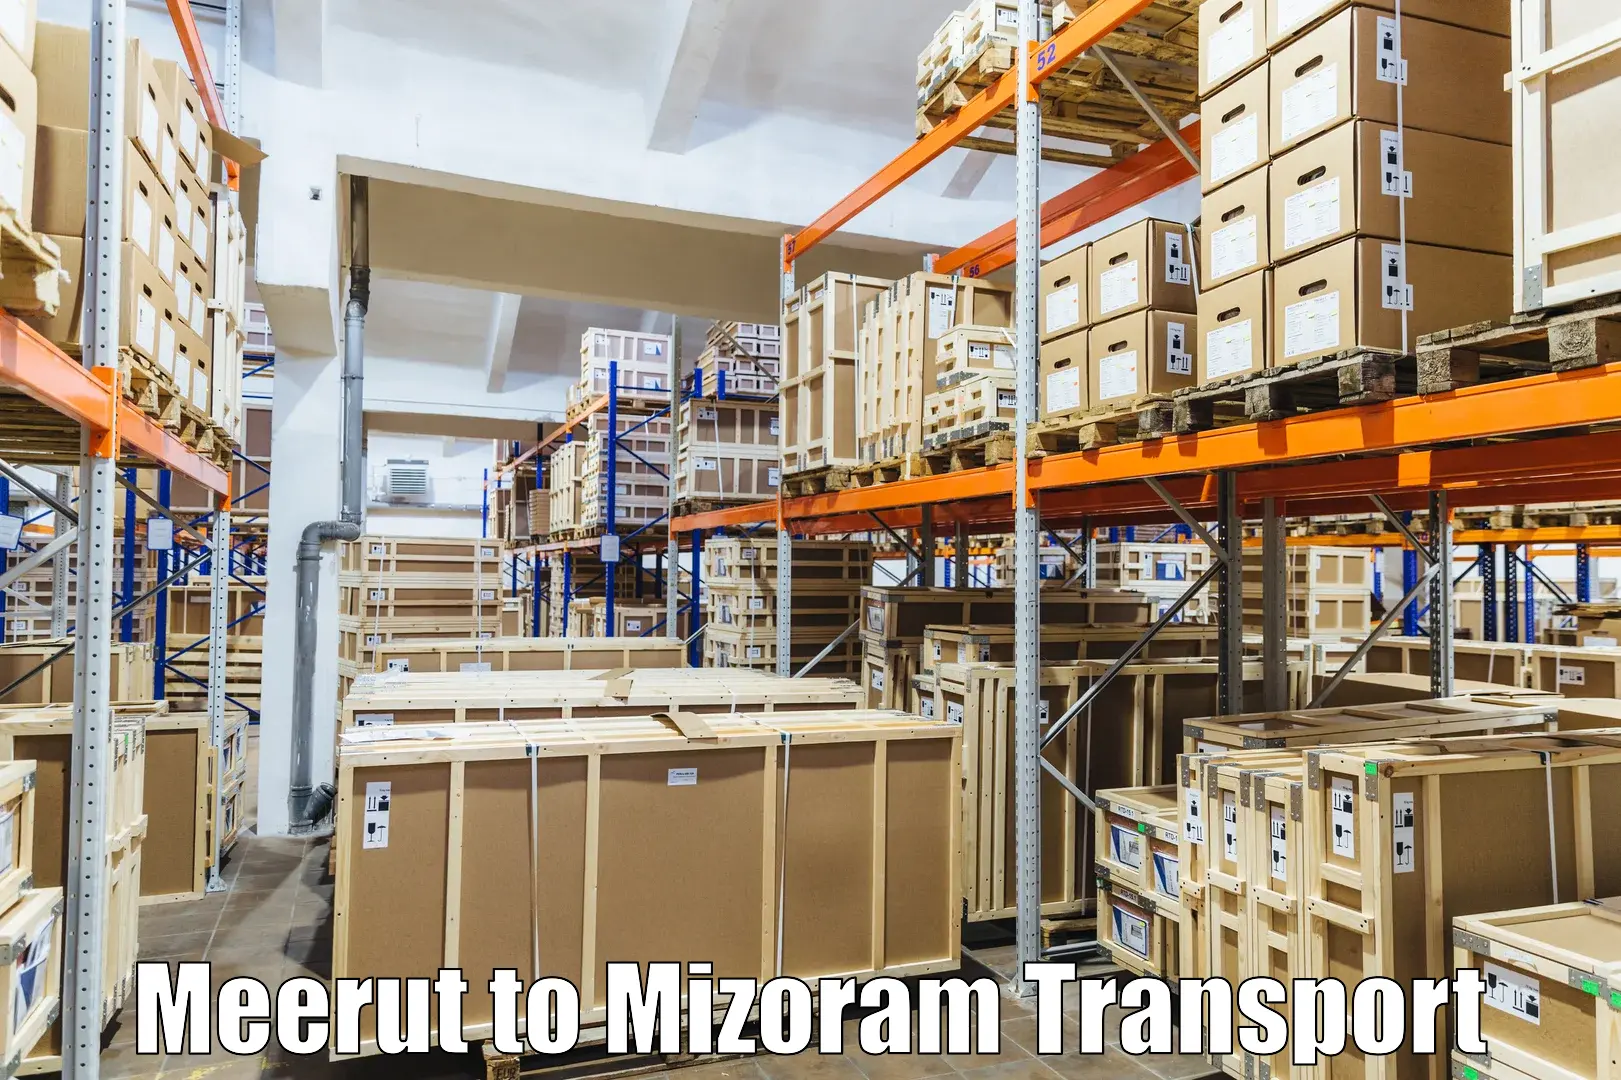 Online transport service Meerut to Mizoram